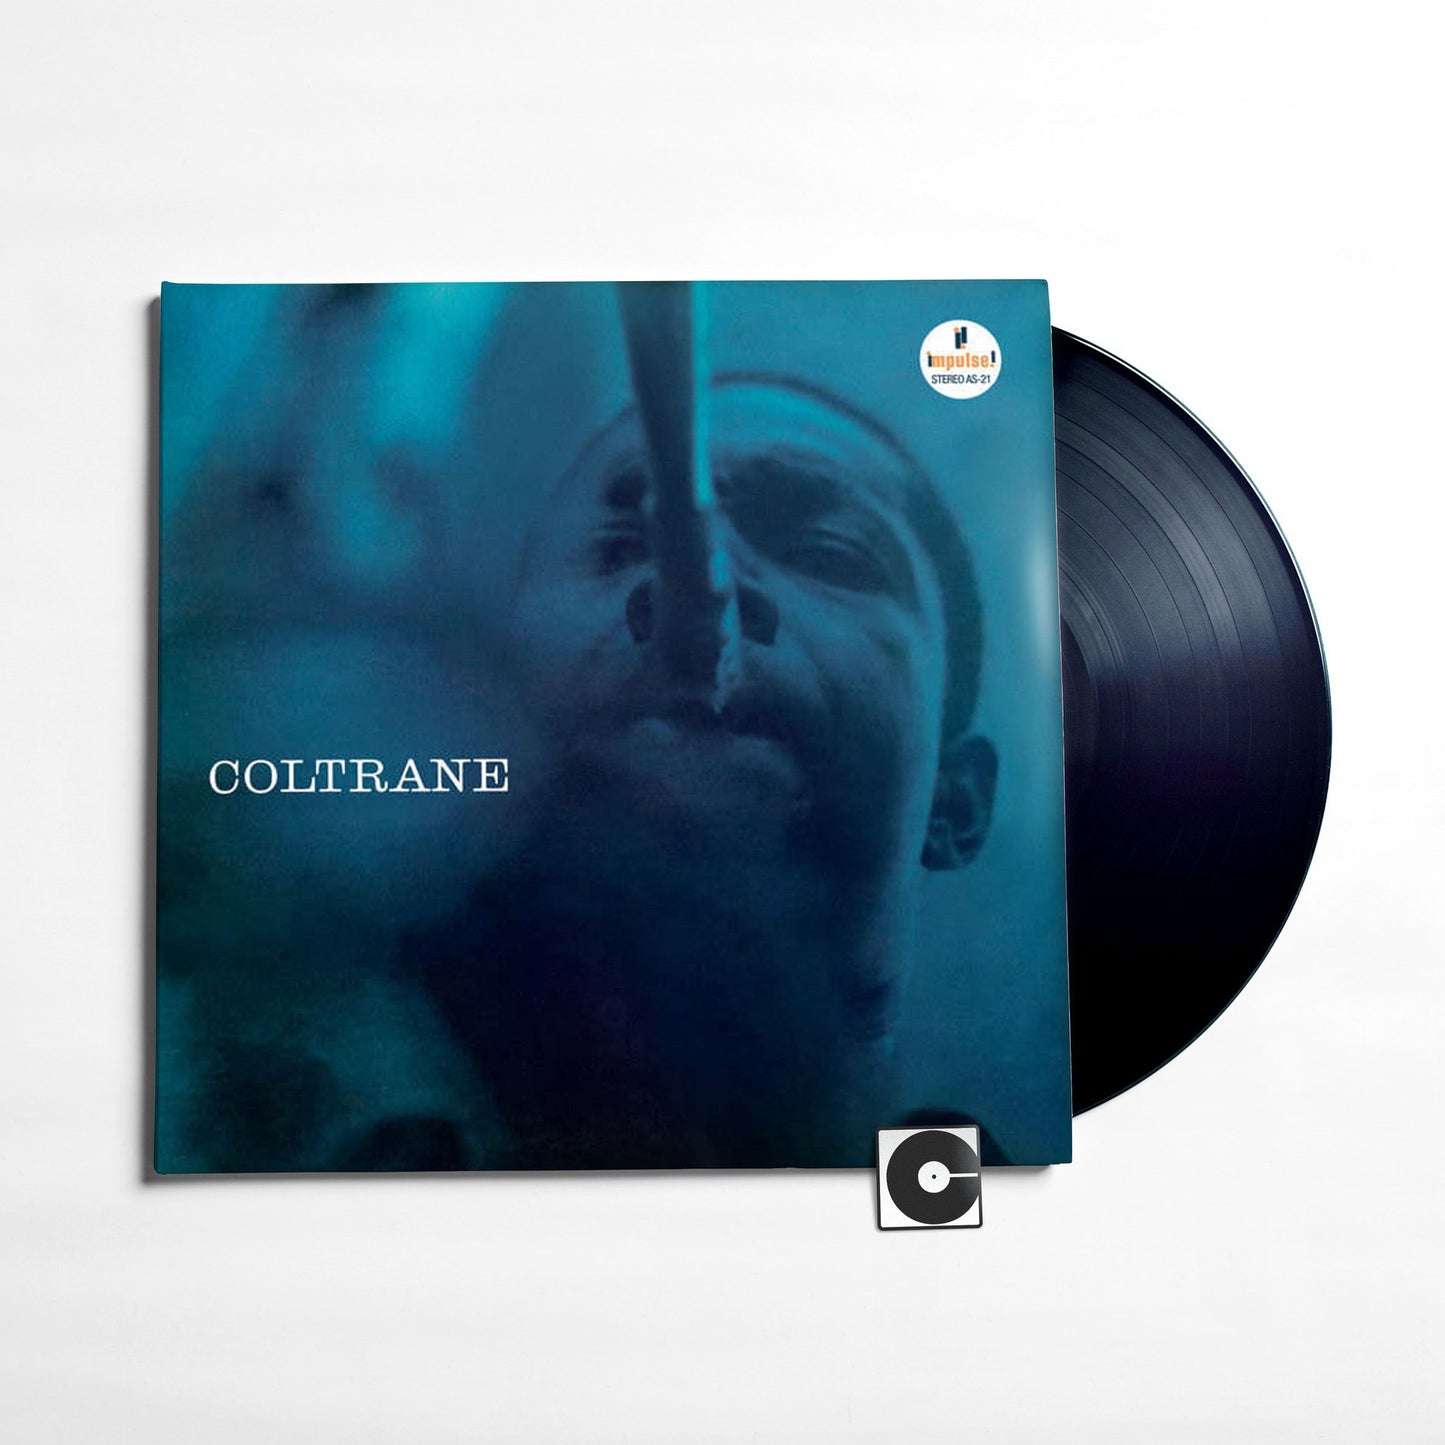 John Coltrane - "Coltrane"